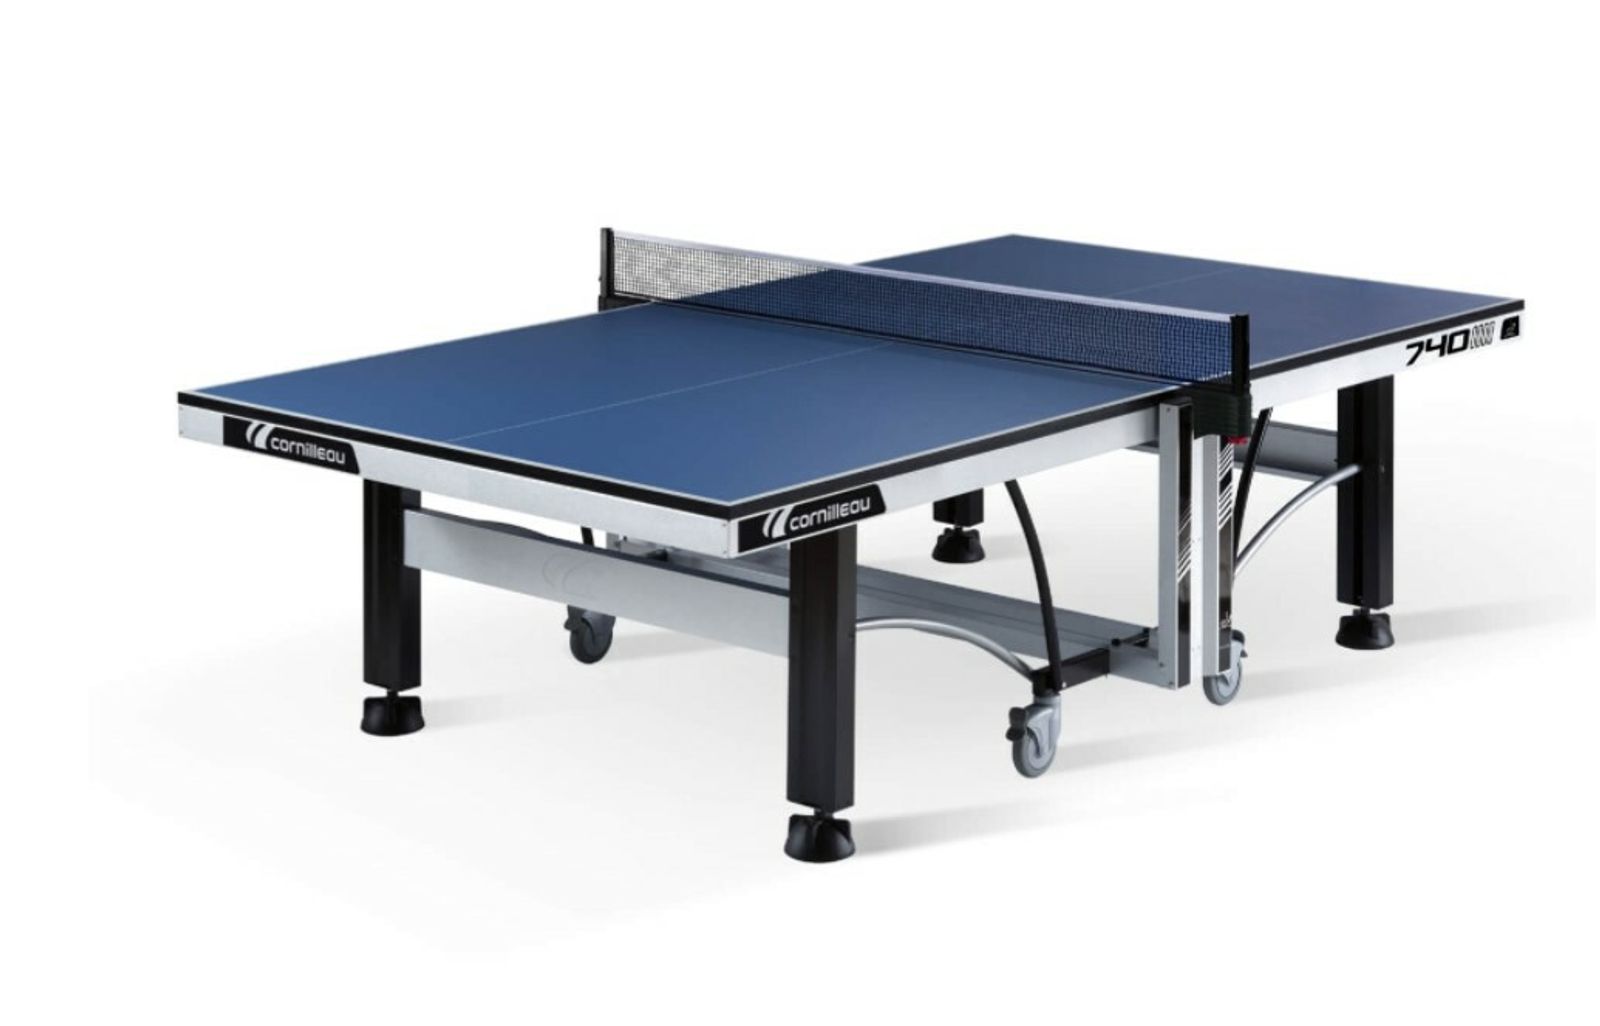 Теннисный стол Cornilleau складной профессиональный  COMPETITION 740 ITTF blue 25 мм фото №1